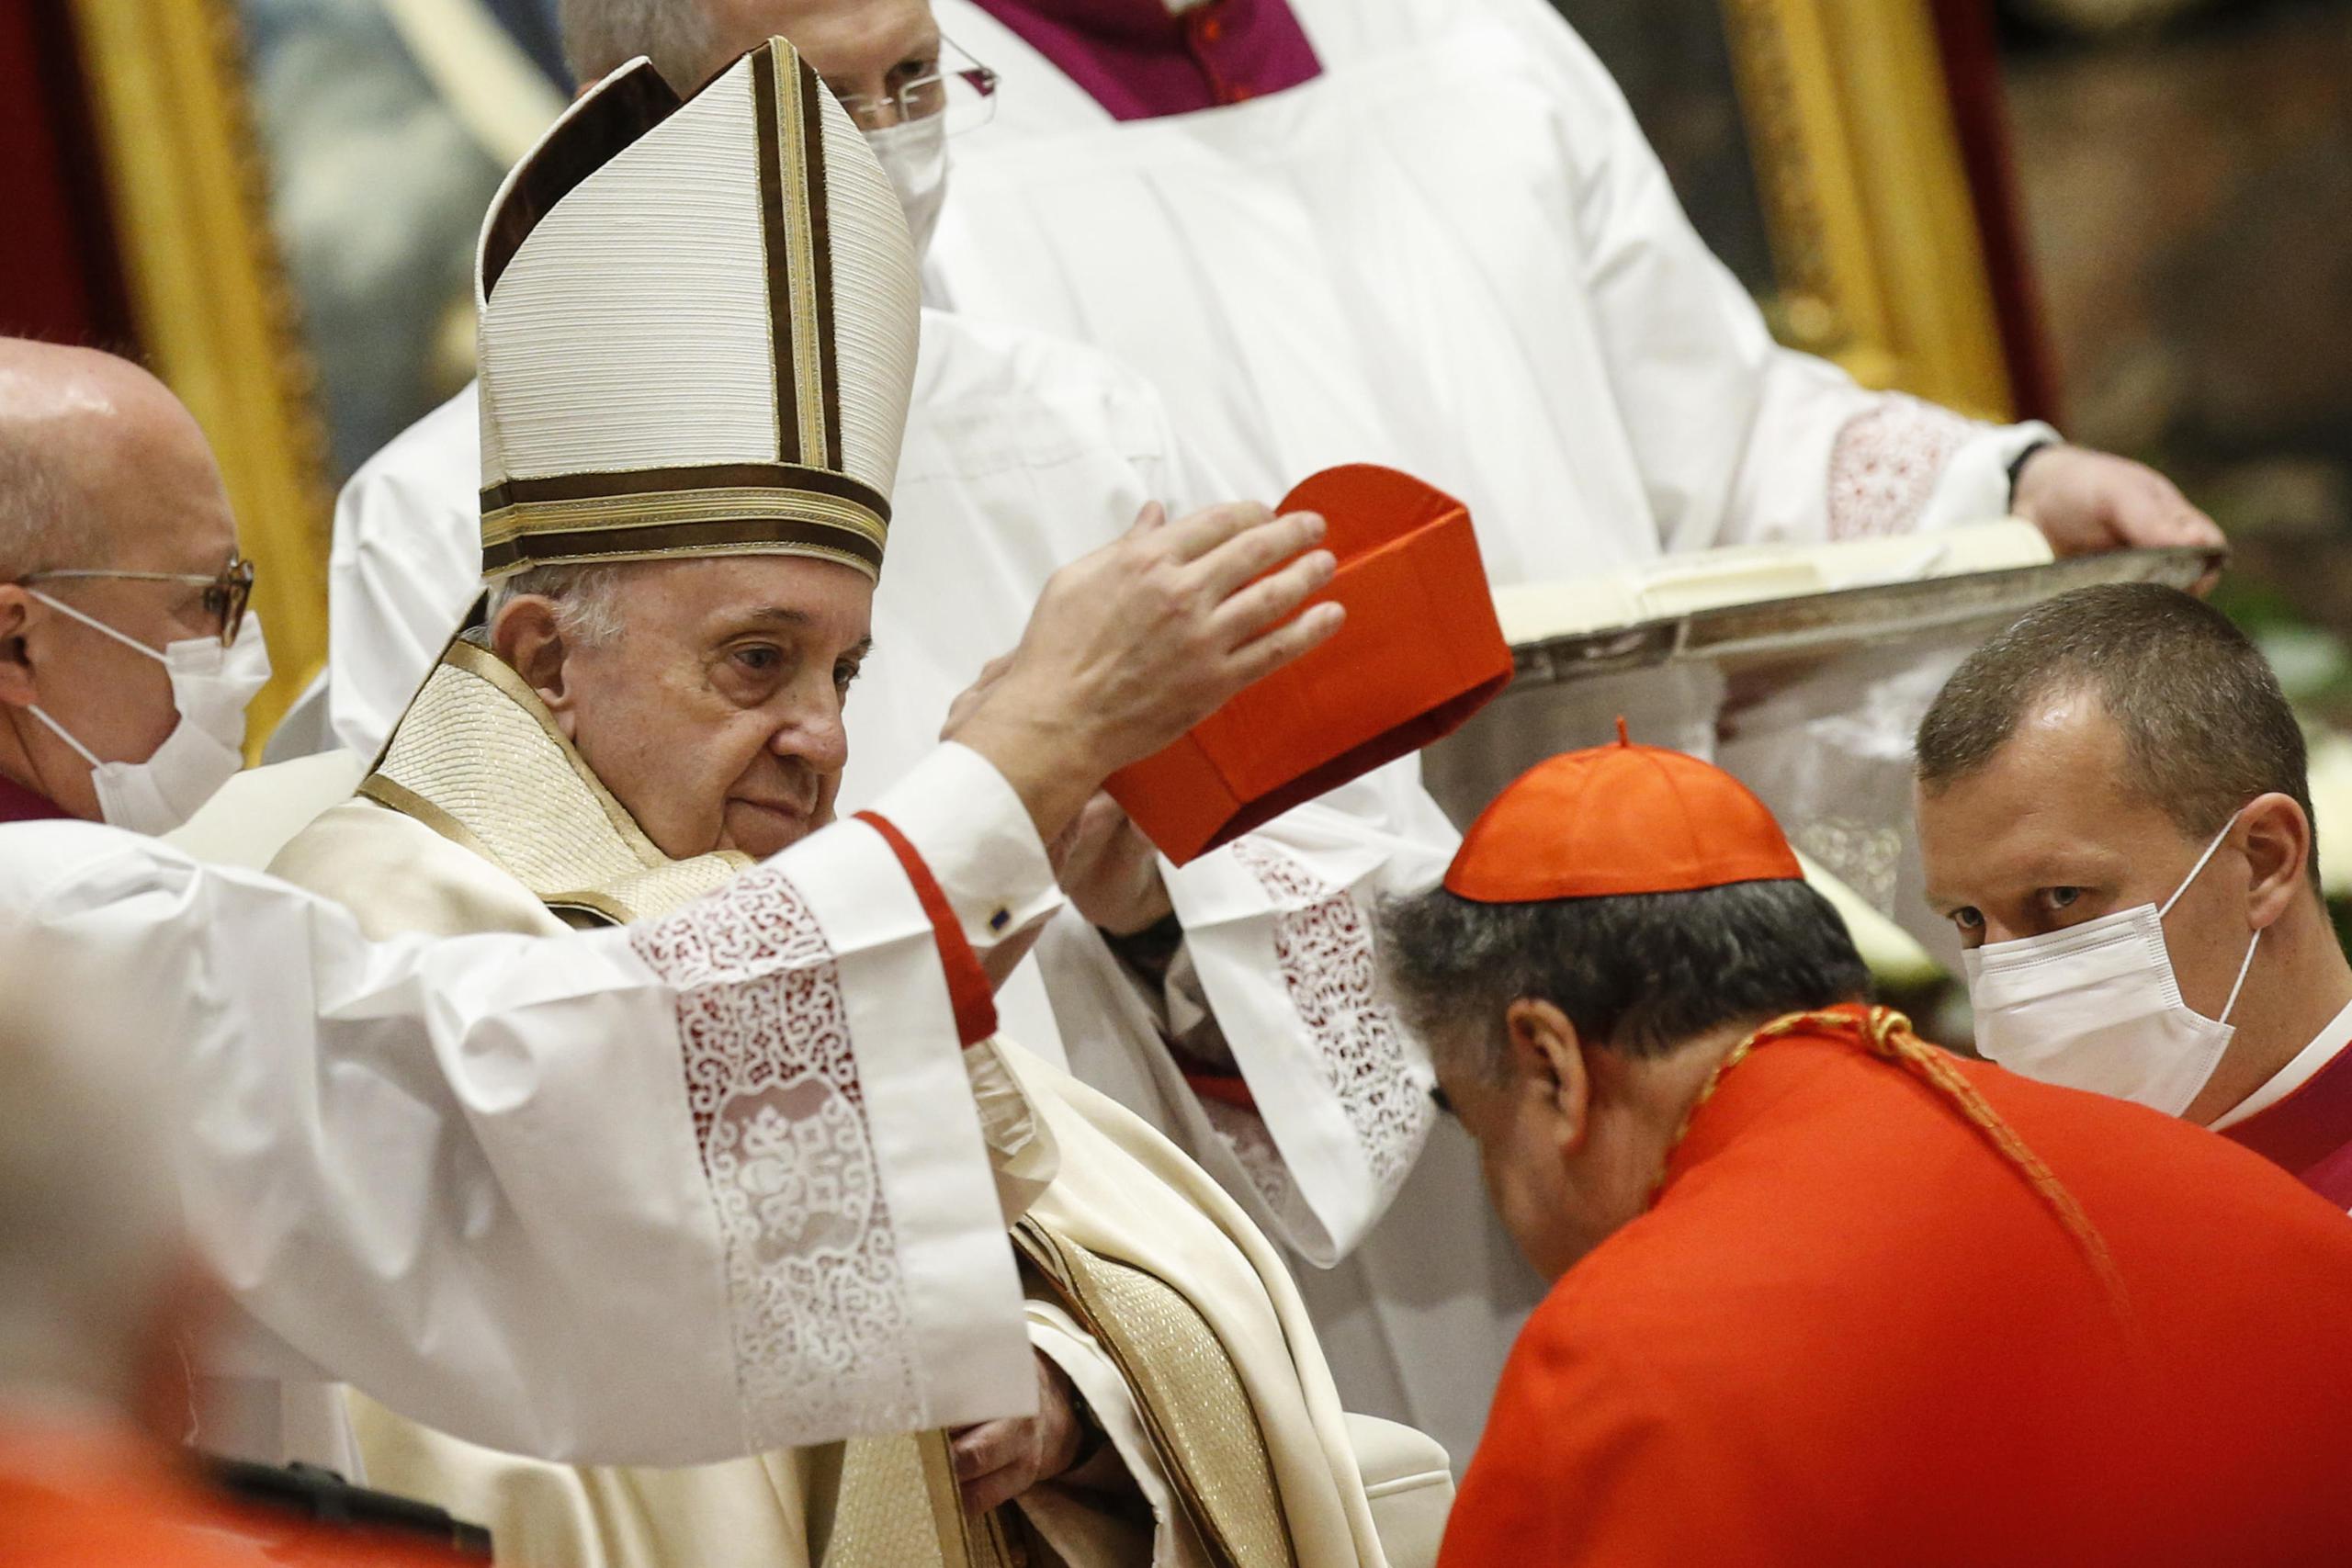 El nuevo cardenal mexicano Felipe Arizmendi Esquivel recibe su capelo cardenalicio del papa Francisco durante una ceremonia del consistorio donde 13 obispos fueron ascendidos a rango de cardenal en la Basílica de San Pedro en el Vaticano.